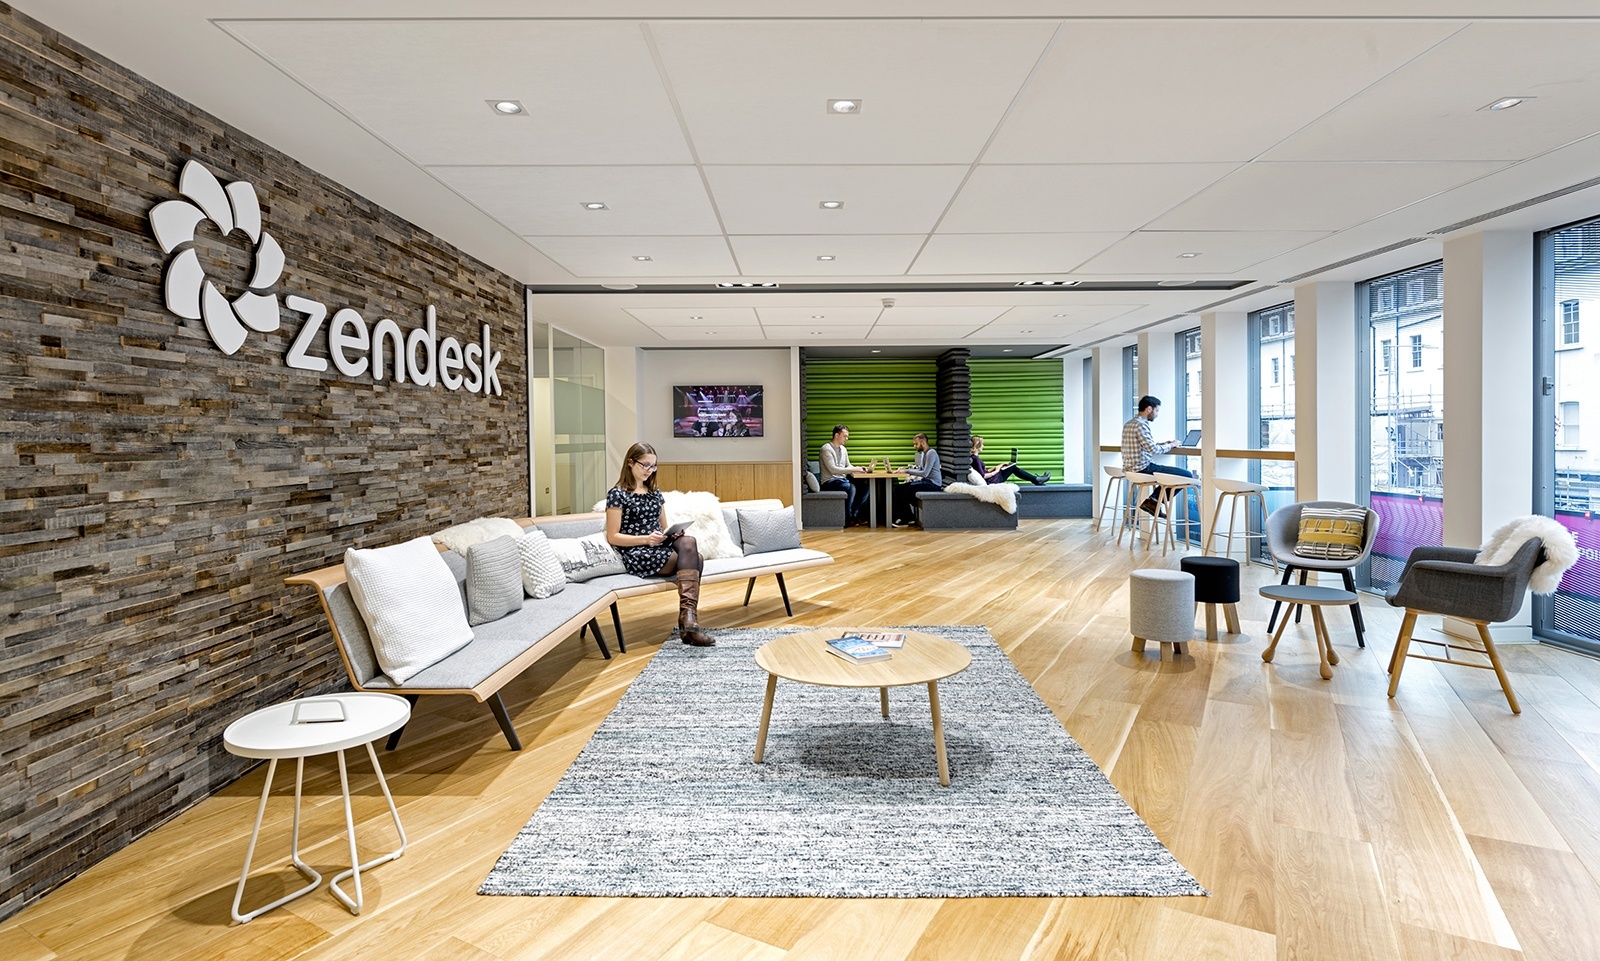 Zendesk_London_office-5